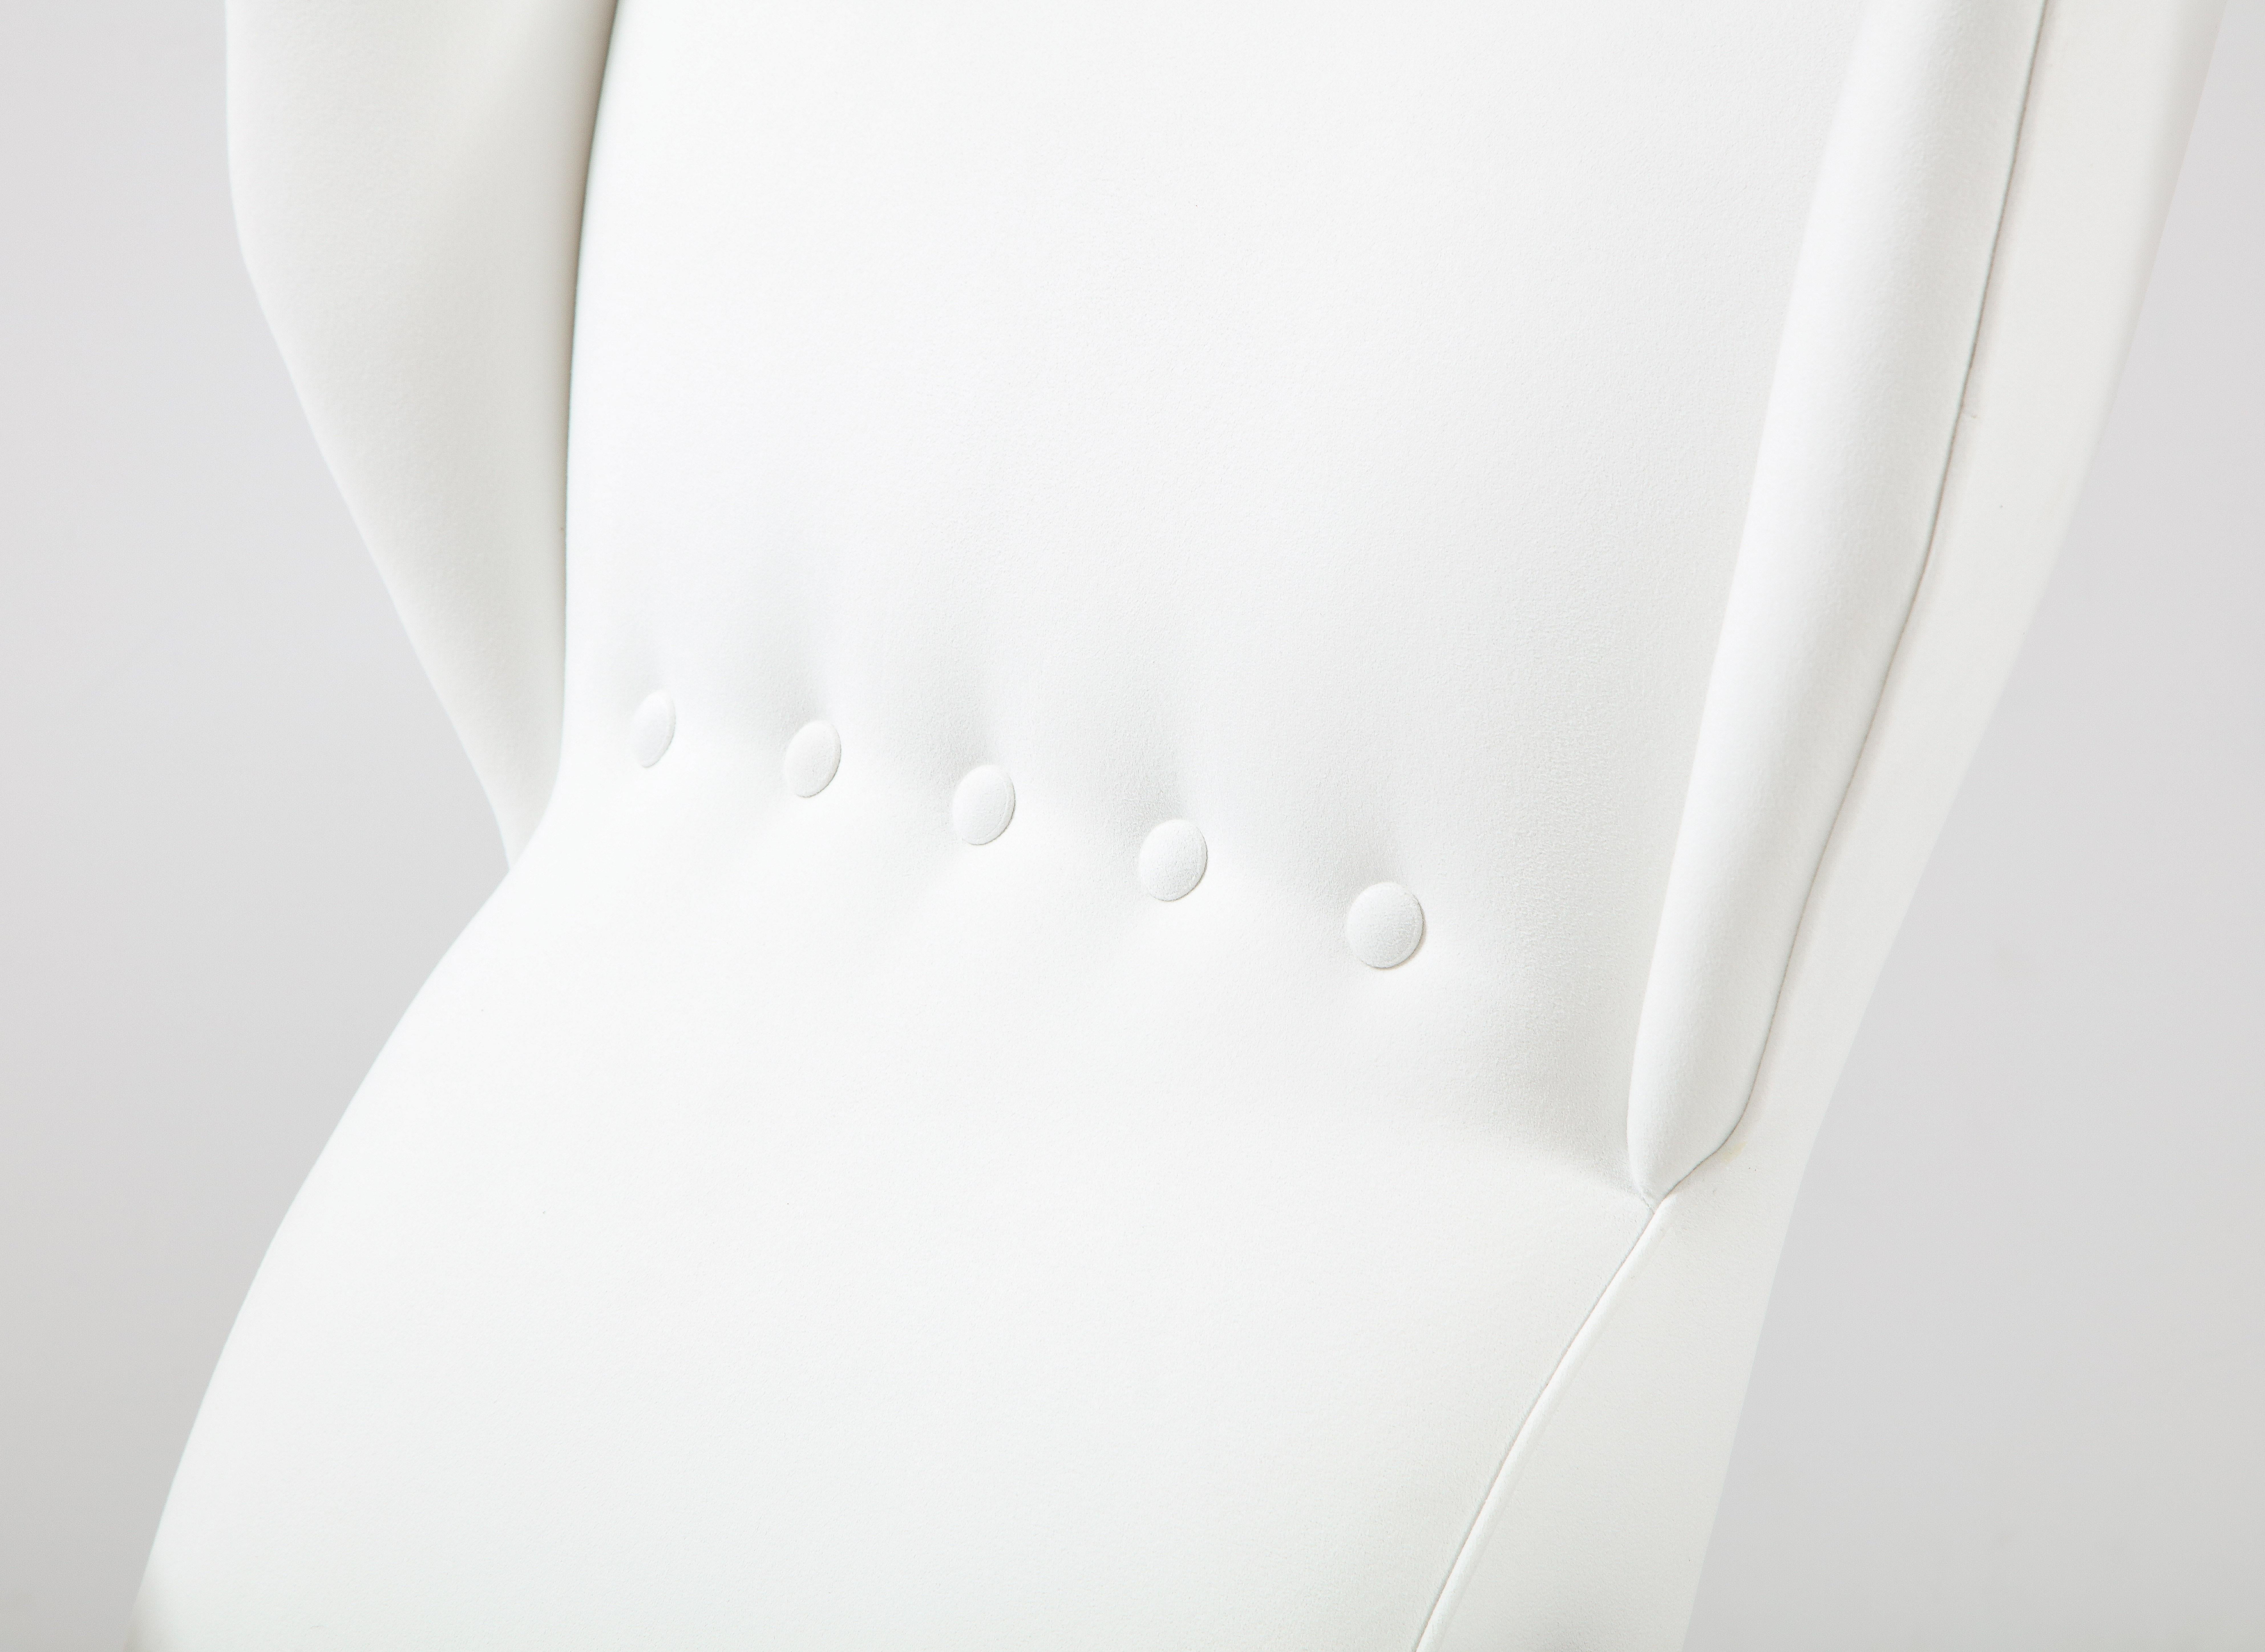 Renzo Franchi pour Camerani Rare paire de chaises longues blanches 